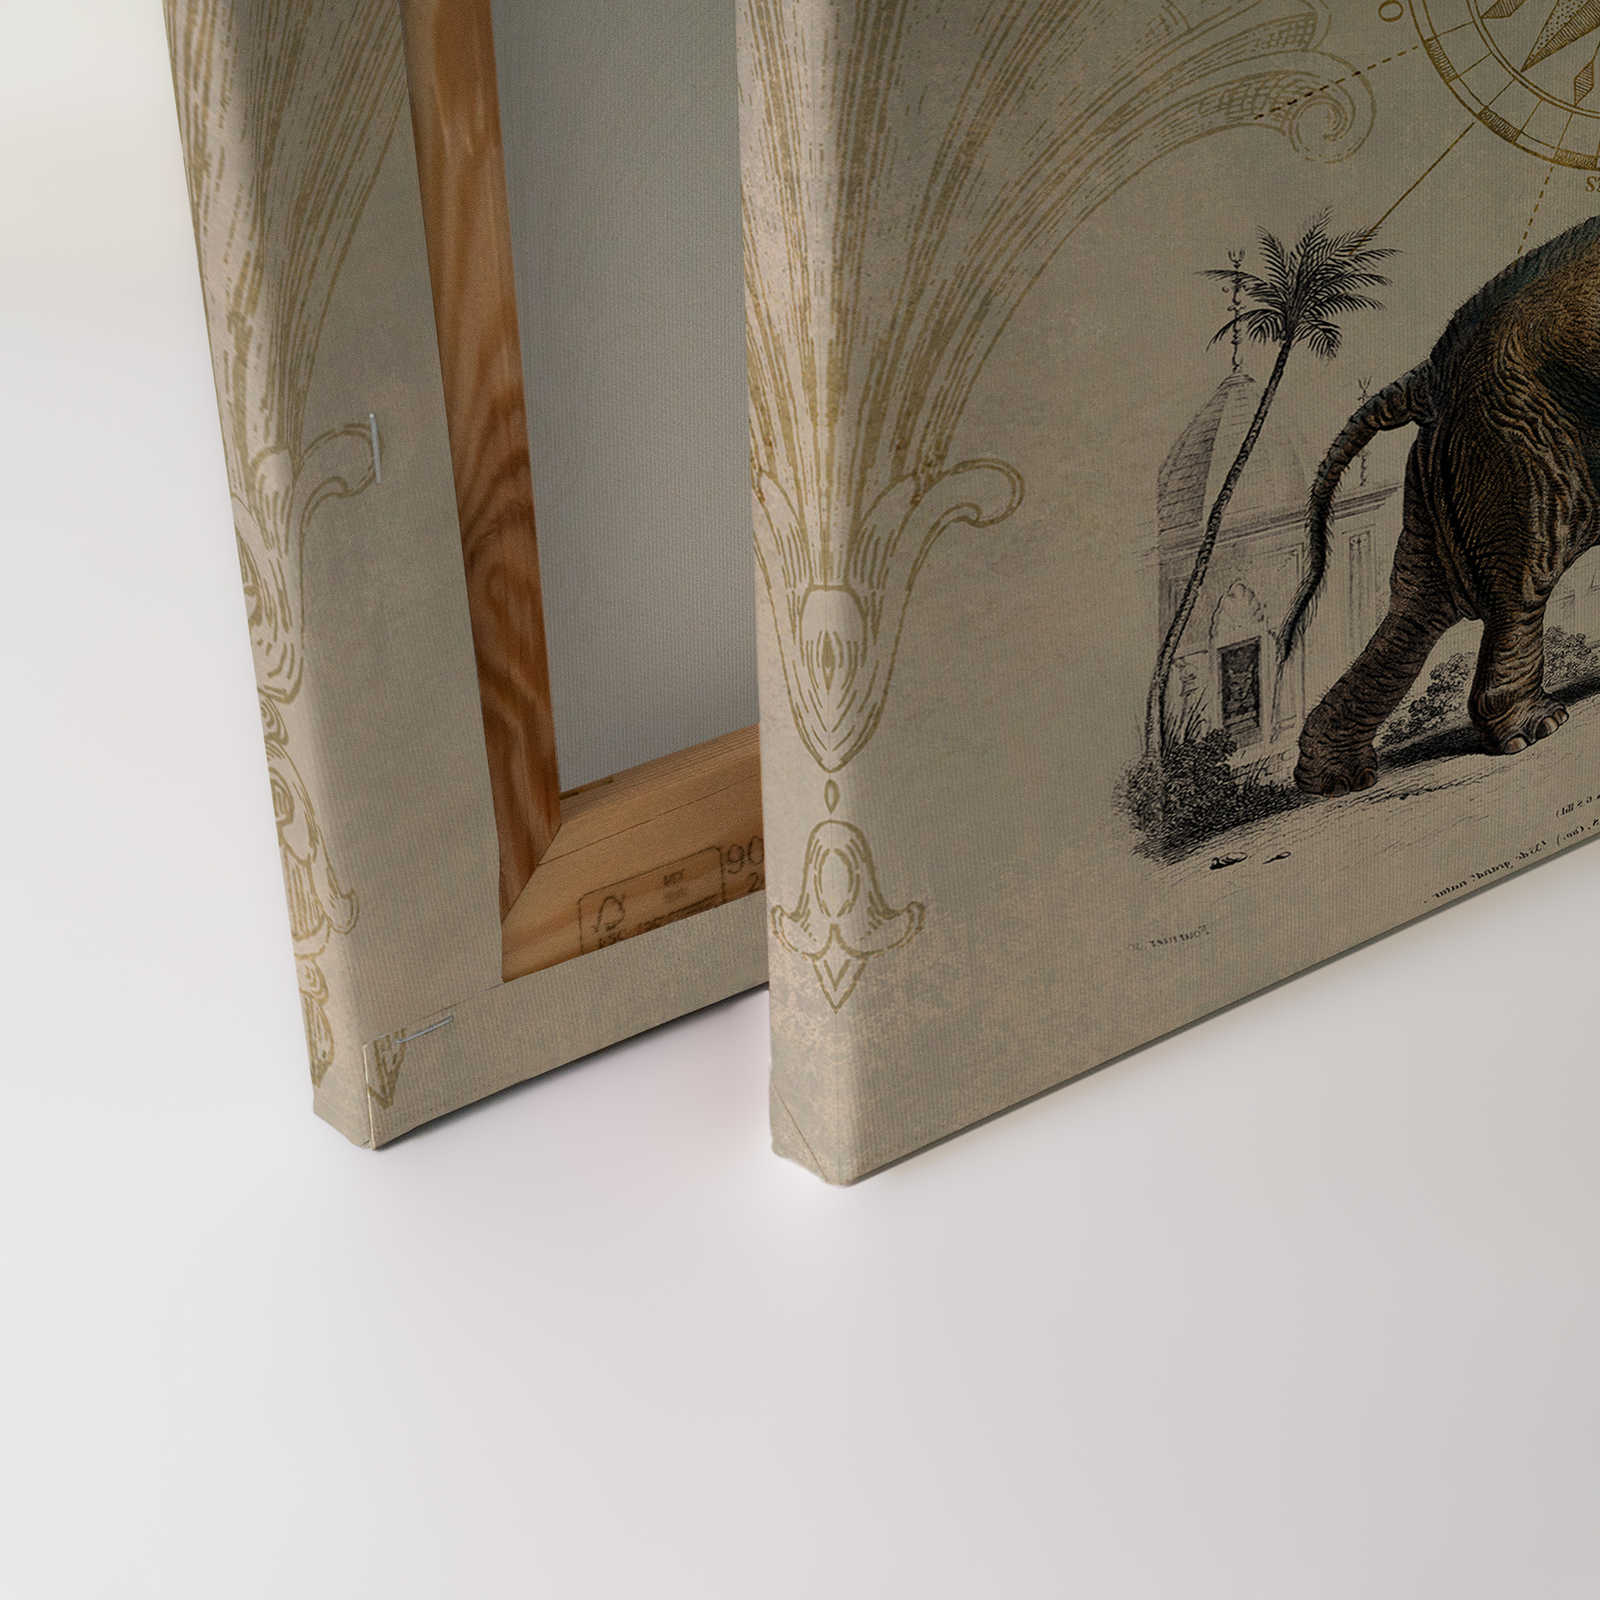             Nostalgie Leinwandbild mit Vintage Elefanten Muster – 1,20 m x 0,80 m
        